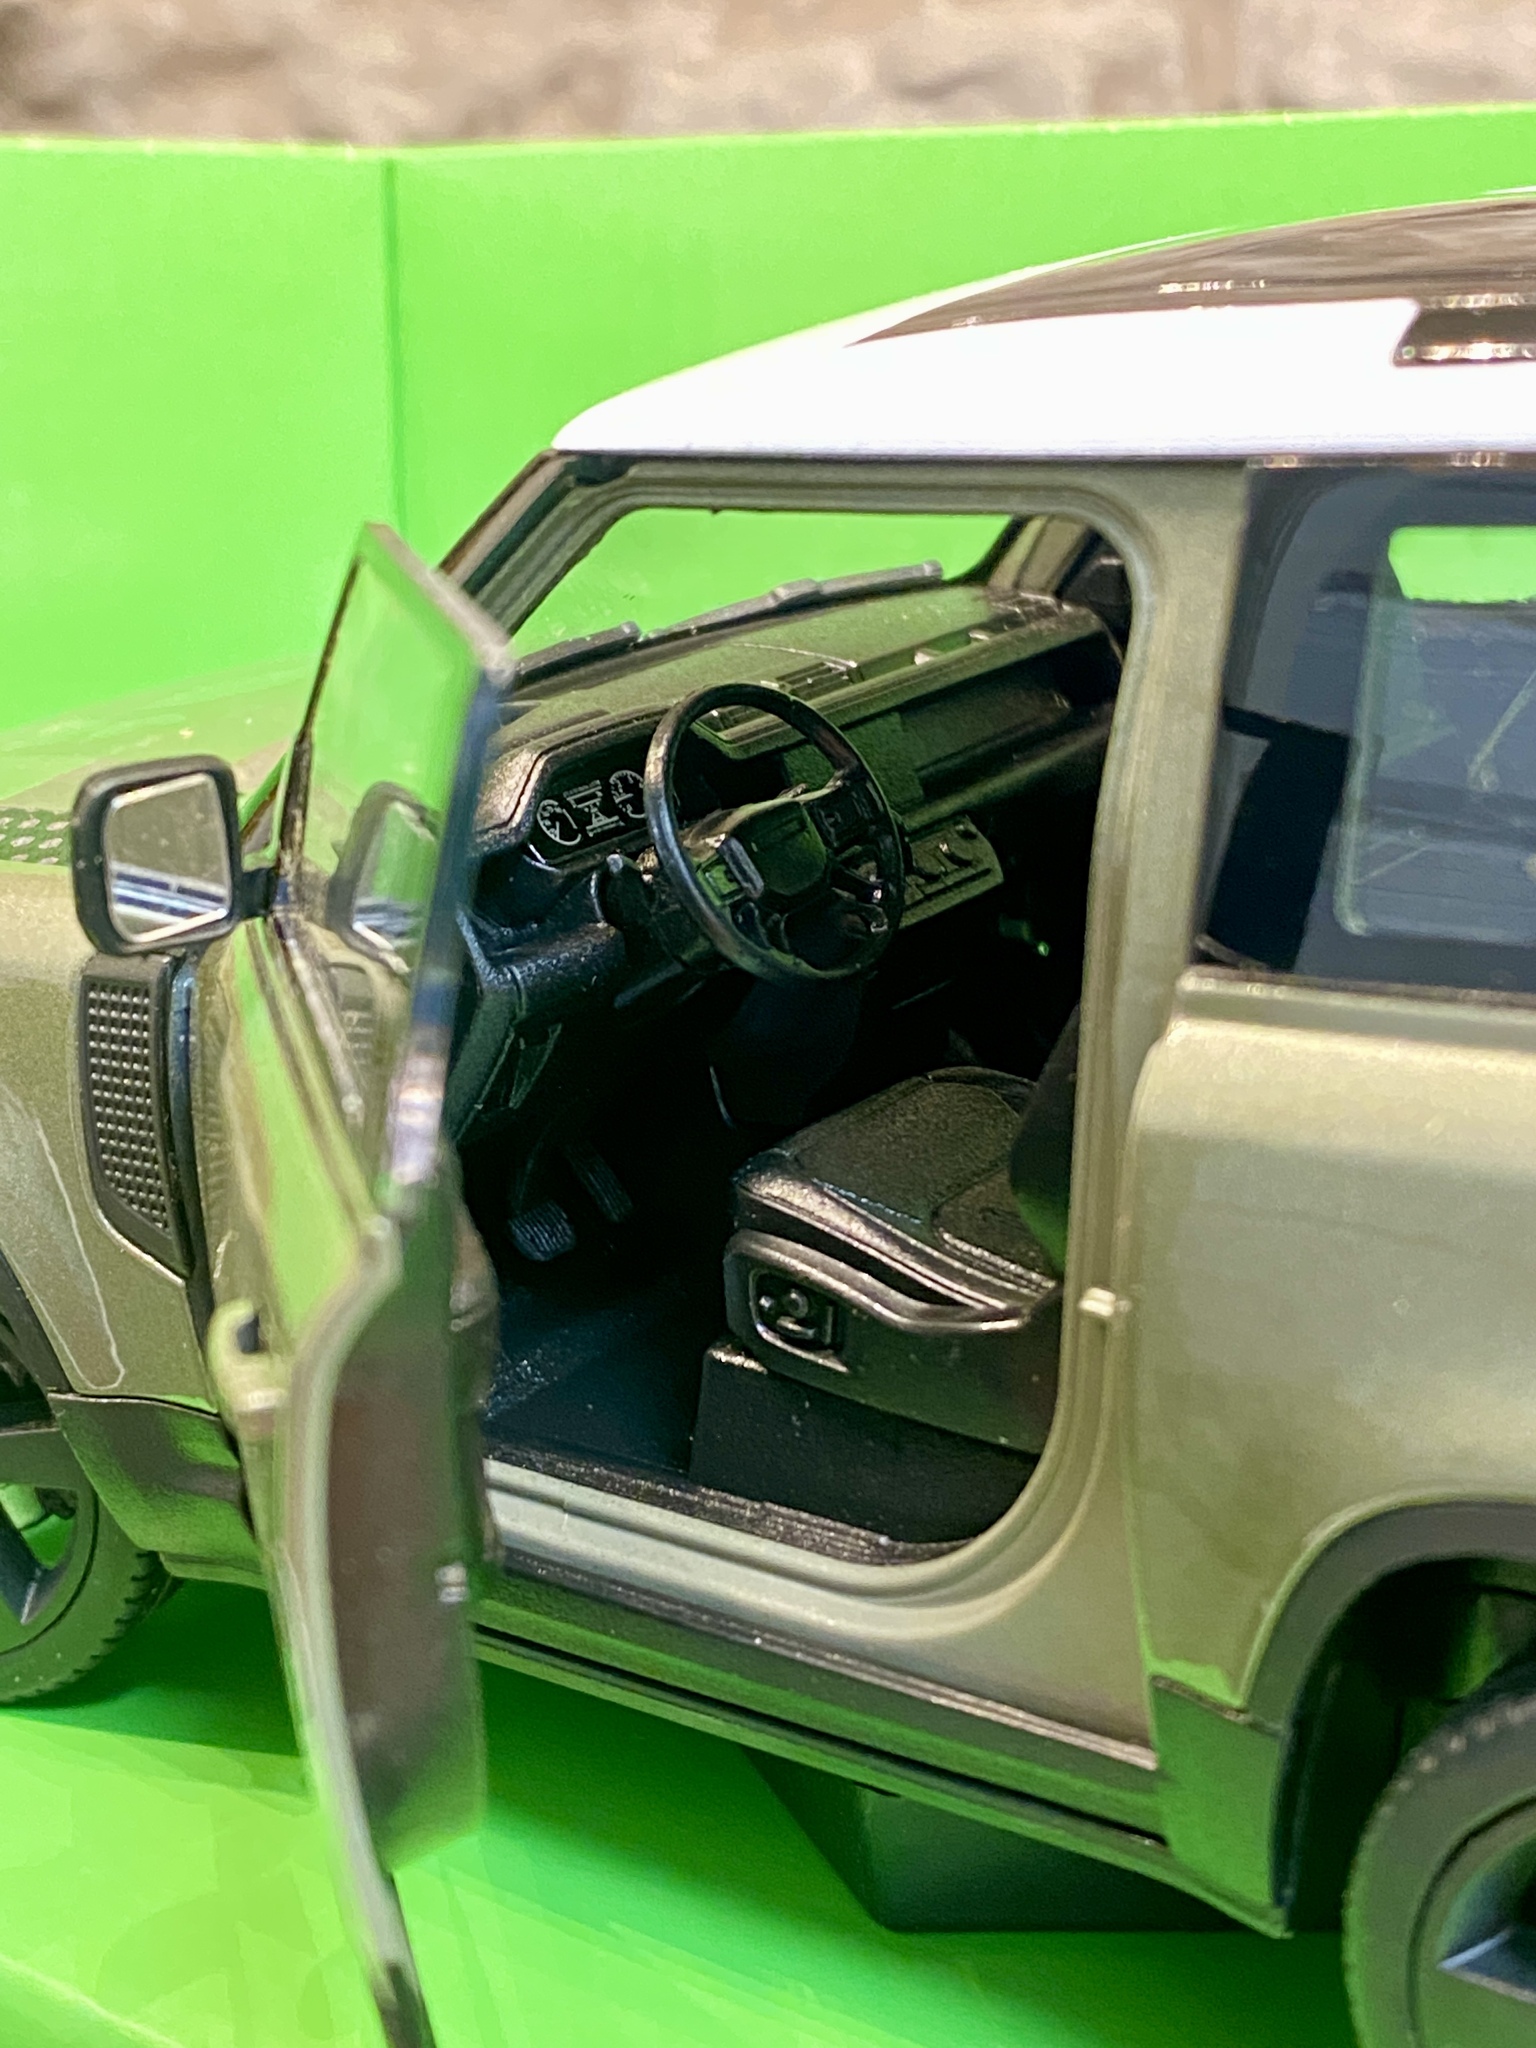 Skala 1/24 Land Rover Defender 2020, Olivgrön metallic från Nex models / Welly